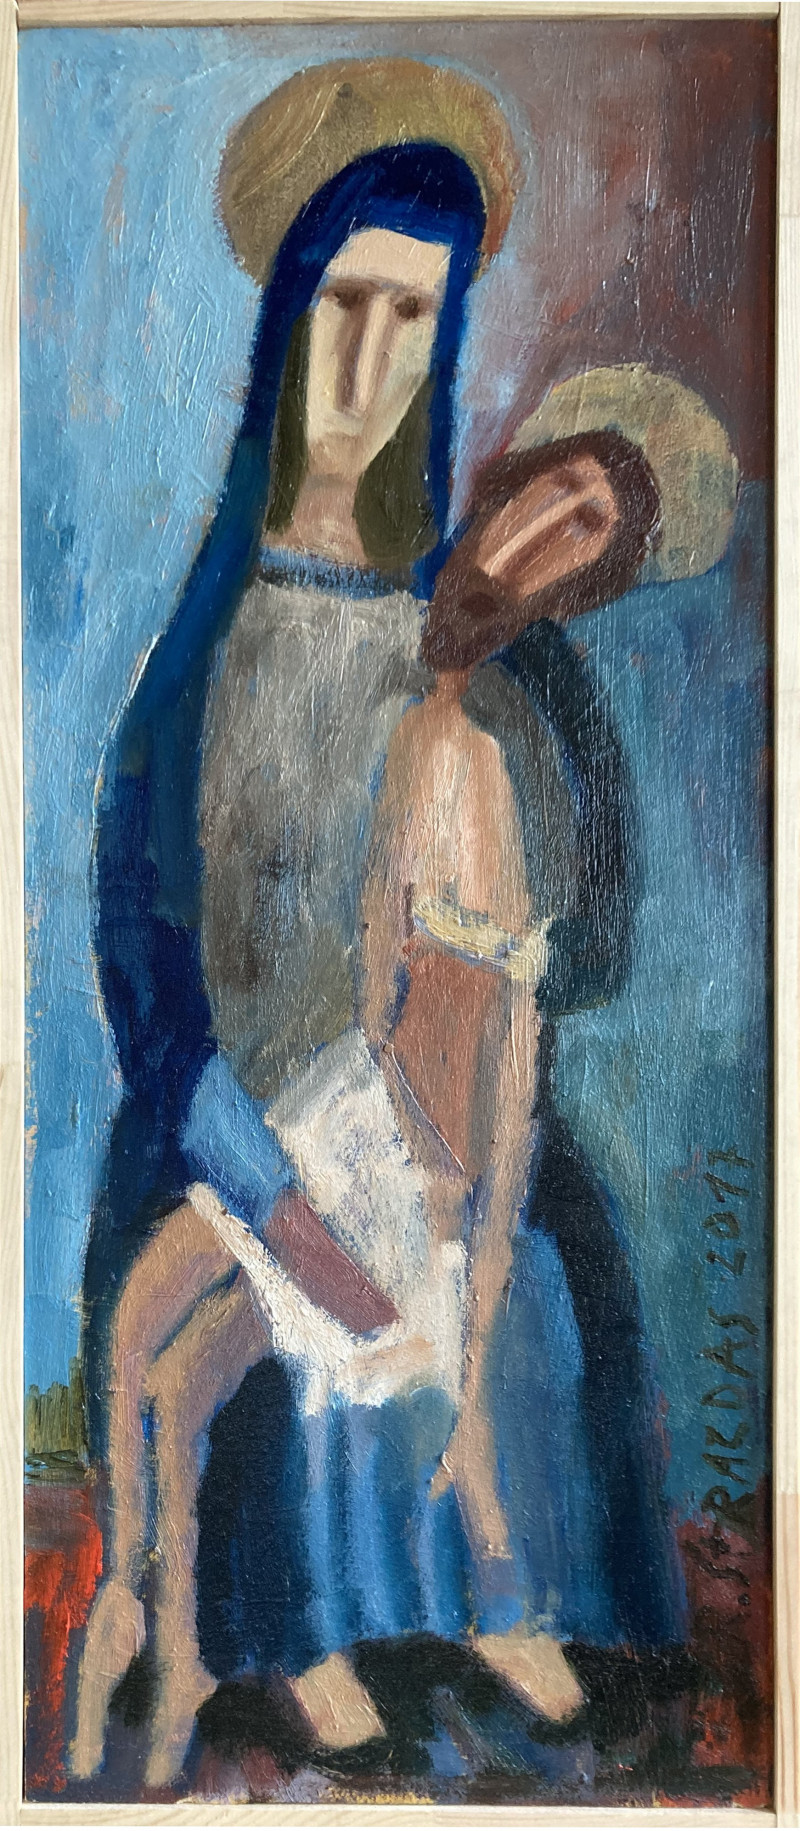 Robertas Strazdas tapytas paveikslas Pieta, Kita , paveikslai internetu